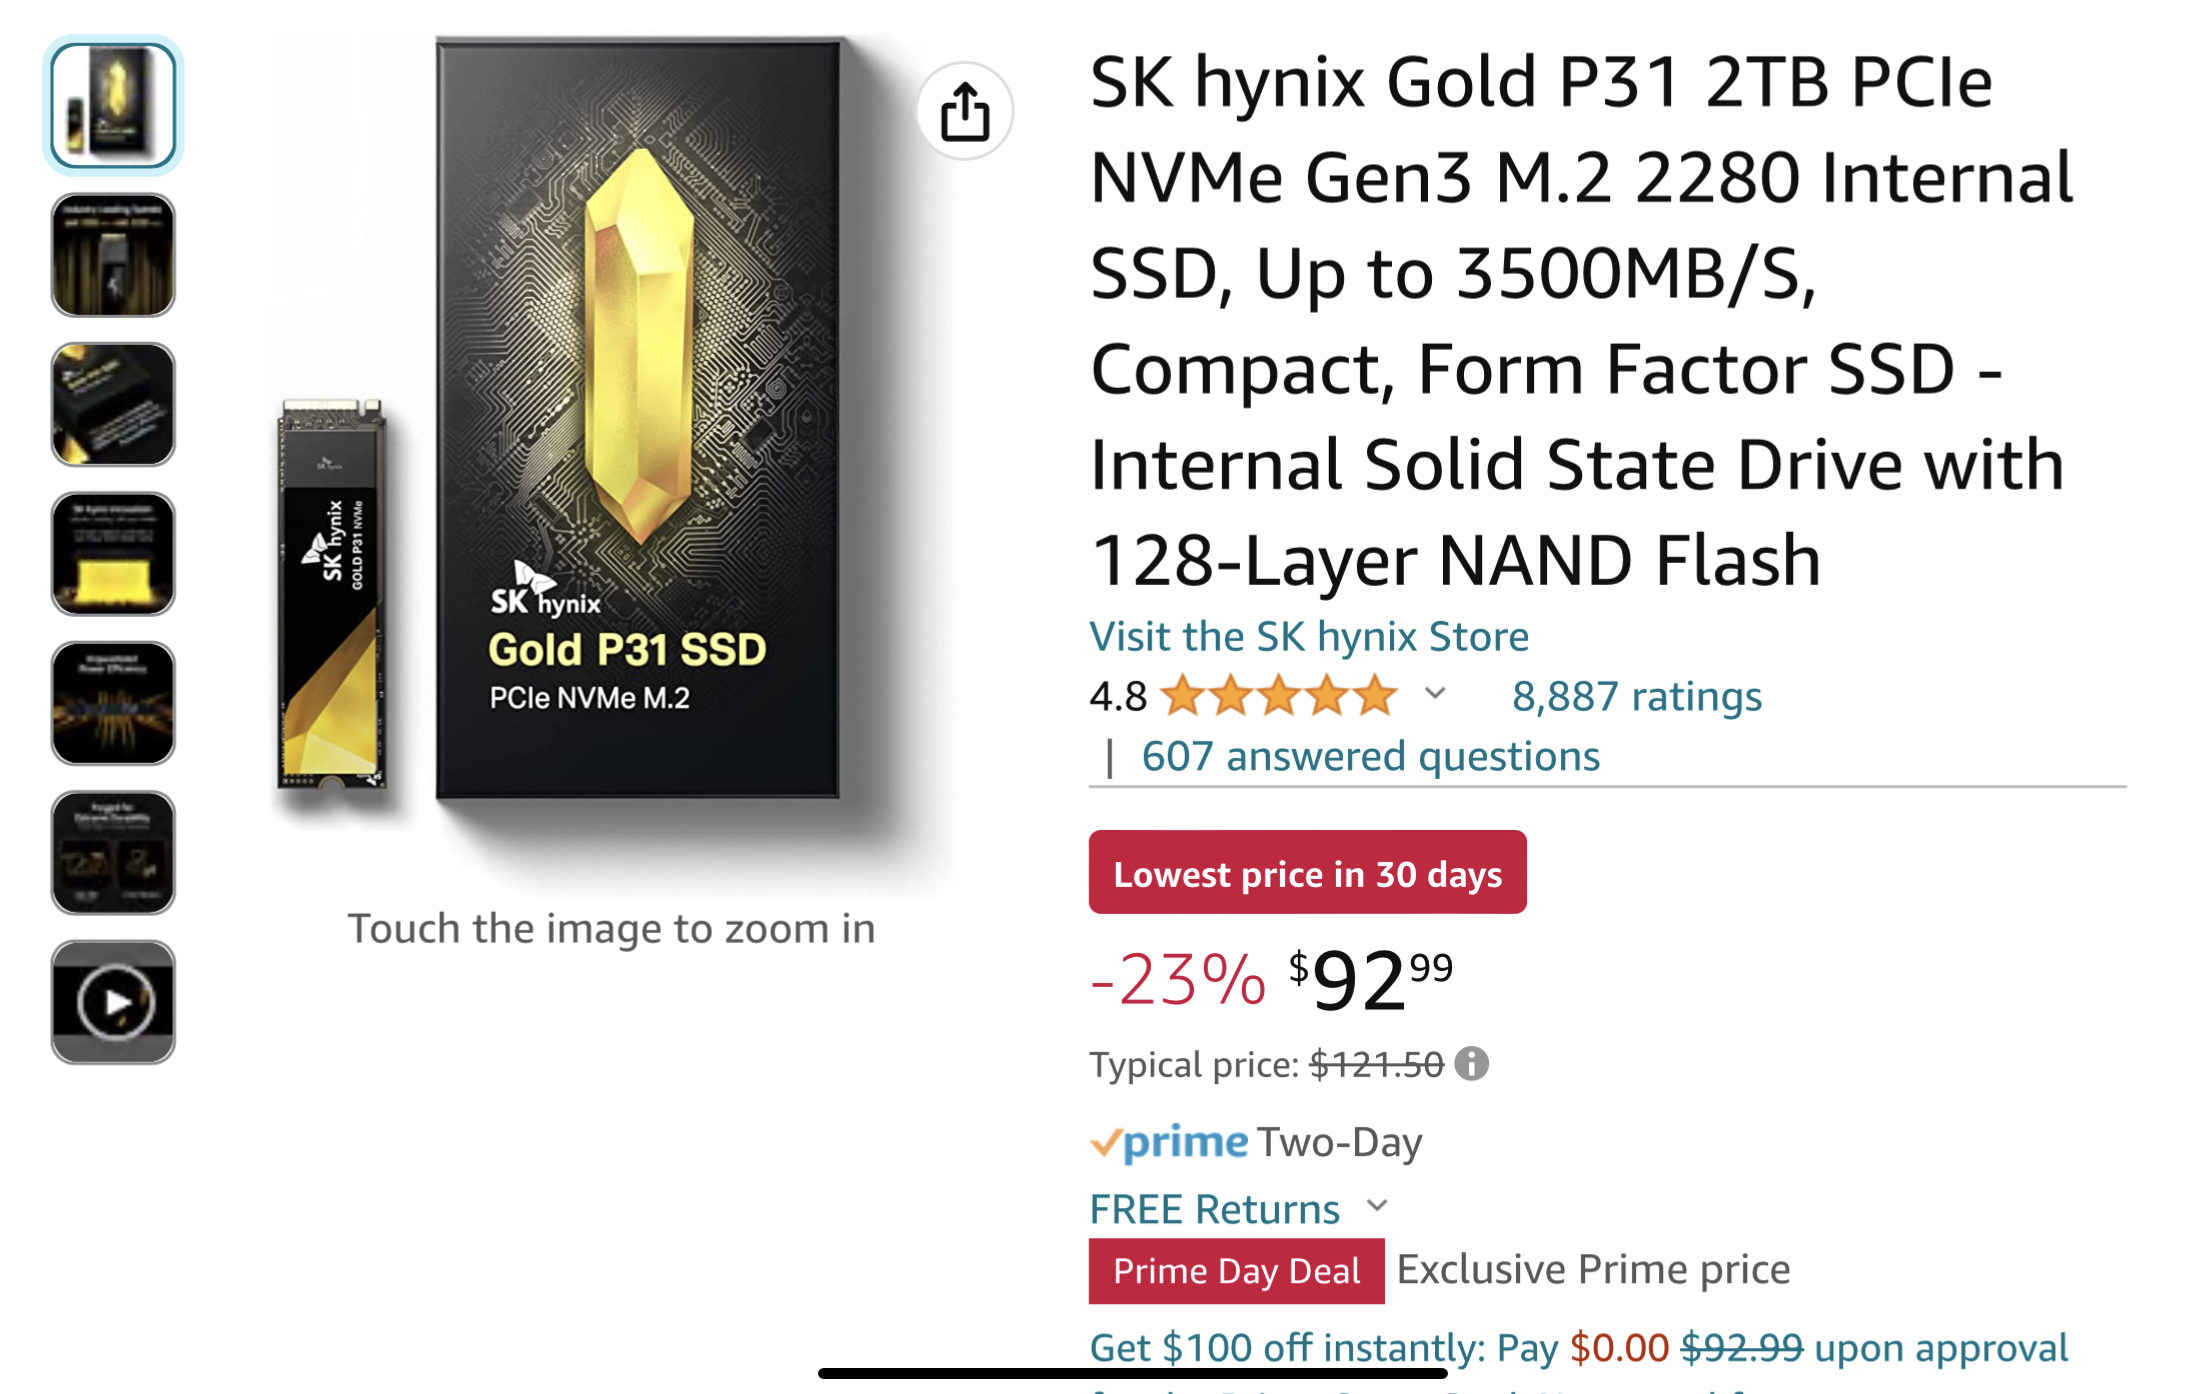 SK hynix Gold P31 2TB NVMe Gen3 M.2 2280 Internal SSD $92.99